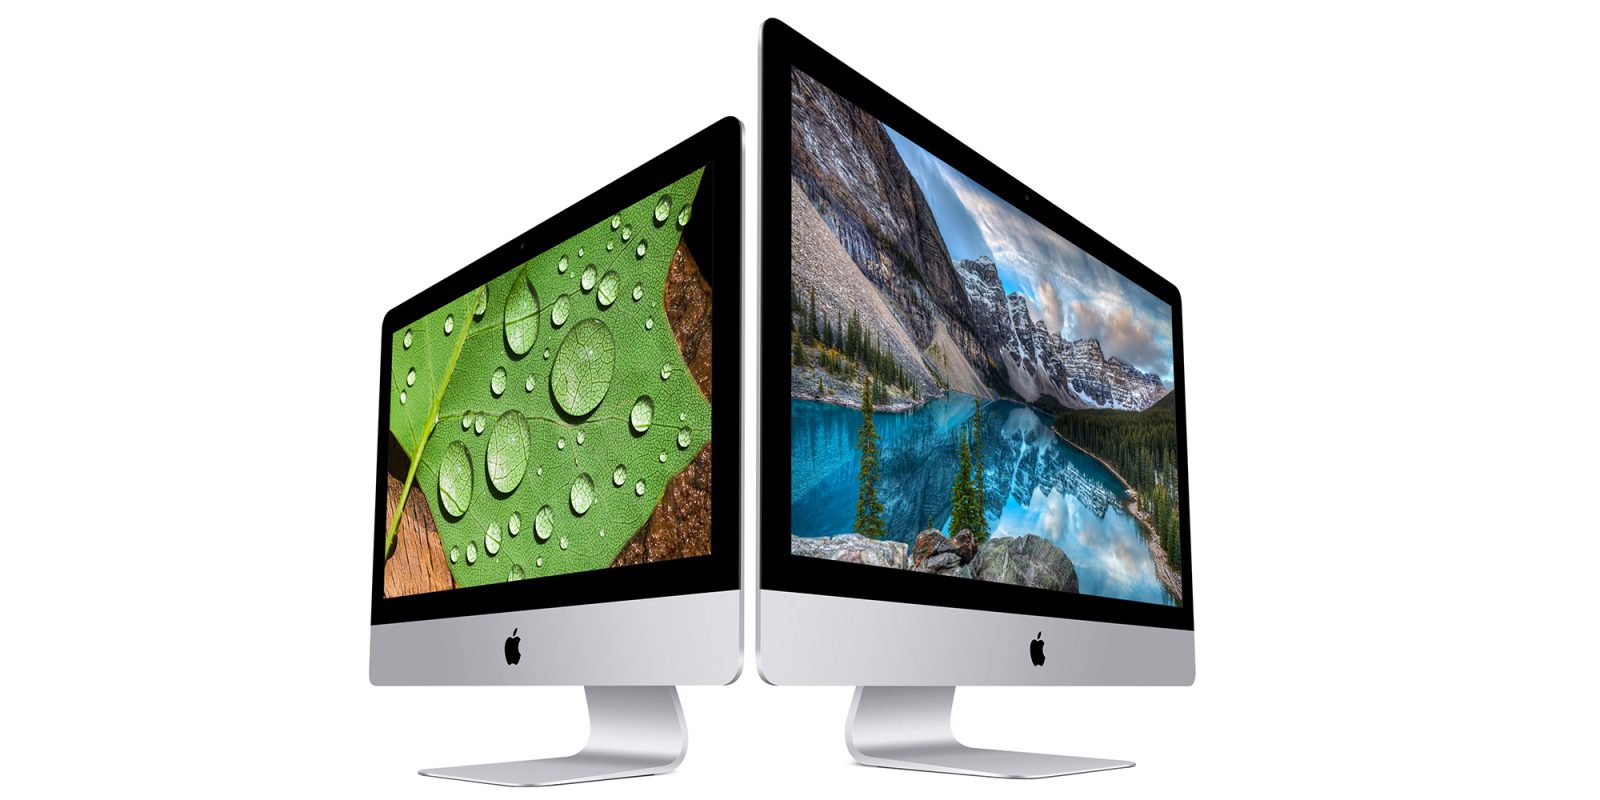 Tim Cook says Apple has ‘great desktops’ in Mac's roadmap